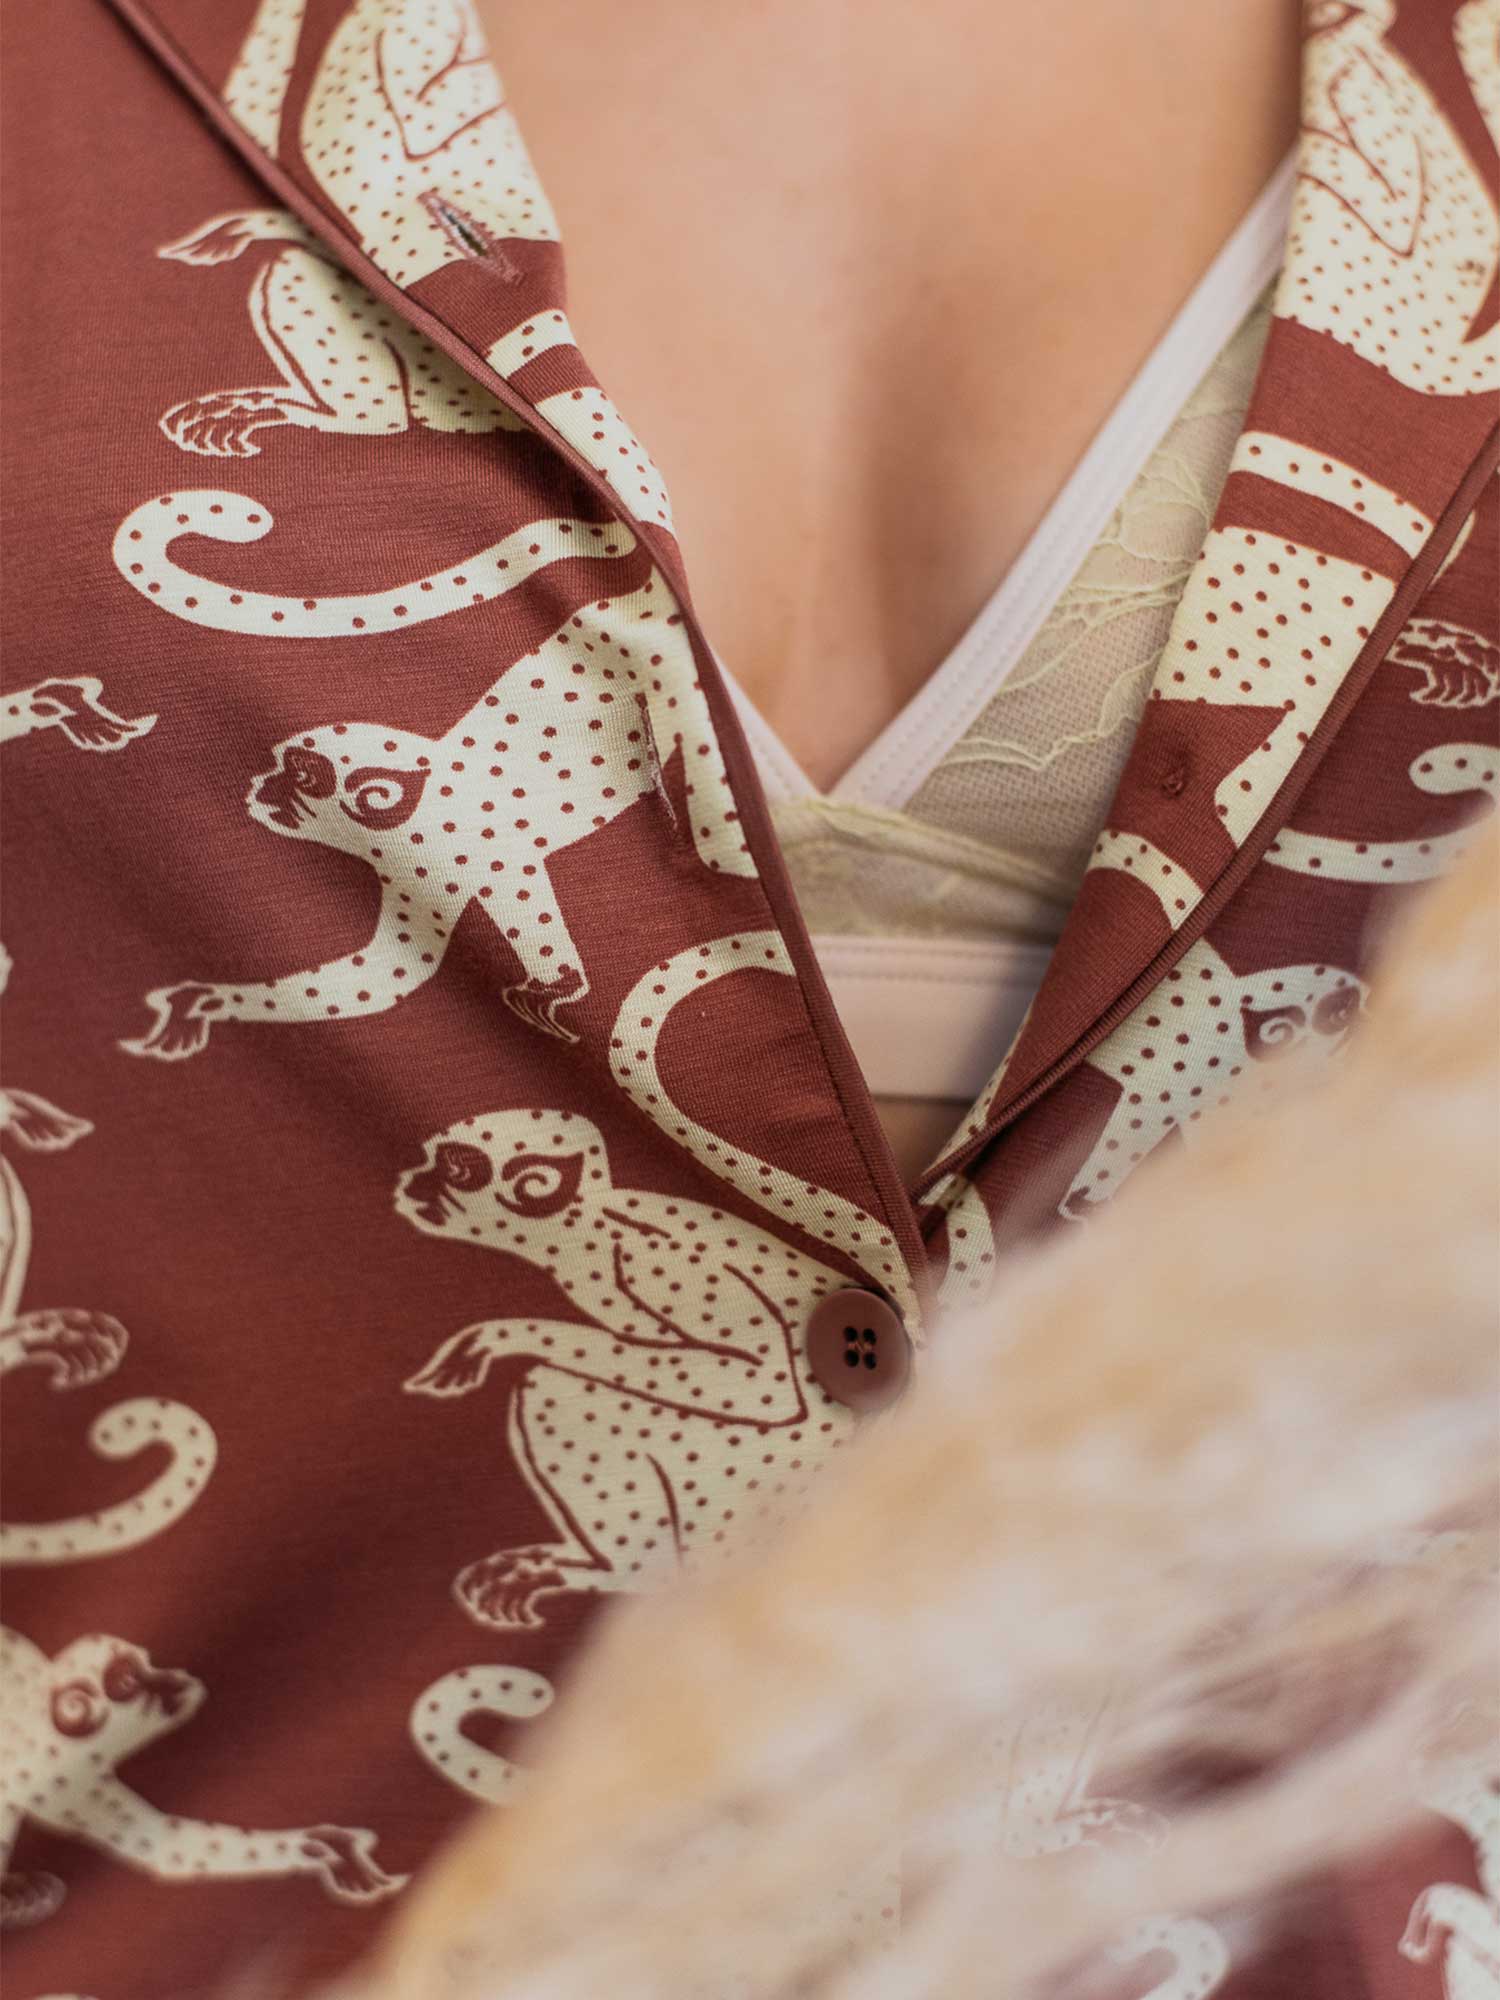 Passend zu der Loungewear aus der Serie Lovestory trägt Sarah Eichhorn das schöne Spitzenbralette in zarten Farben. | mey®